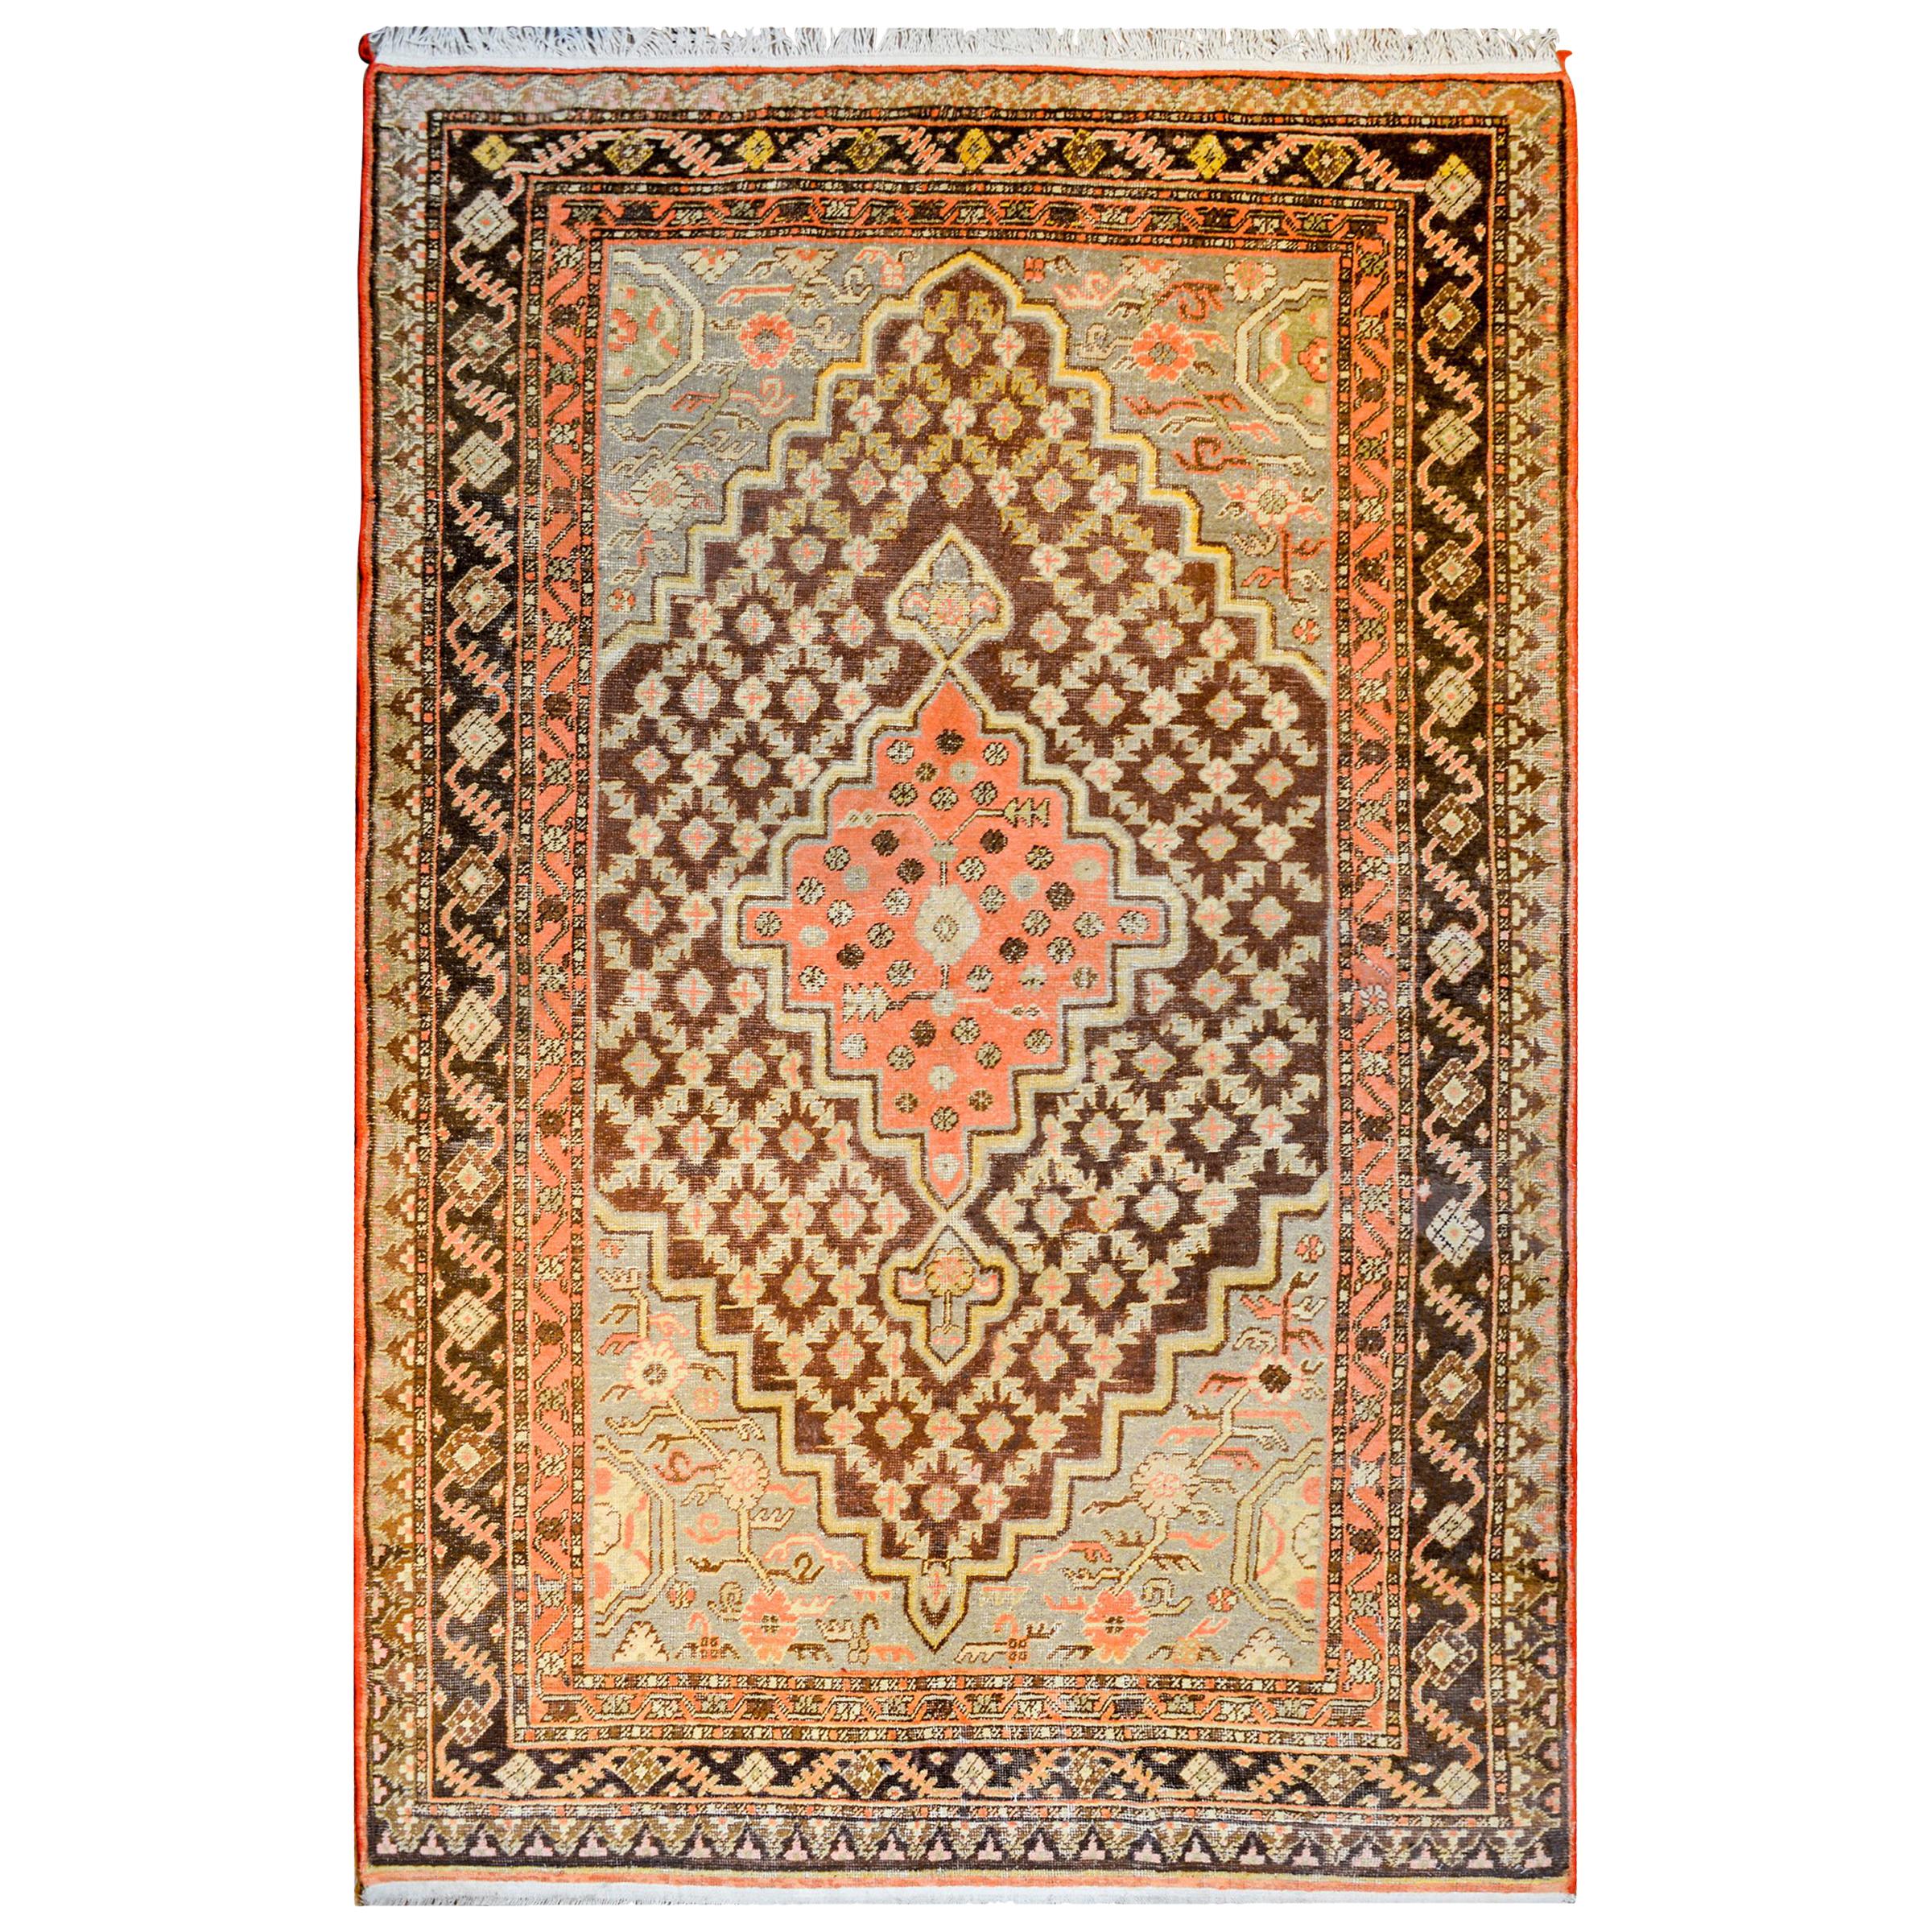 Zentralasiatischer Samarghand-Teppich aus dem frühen 20. Jahrhundert